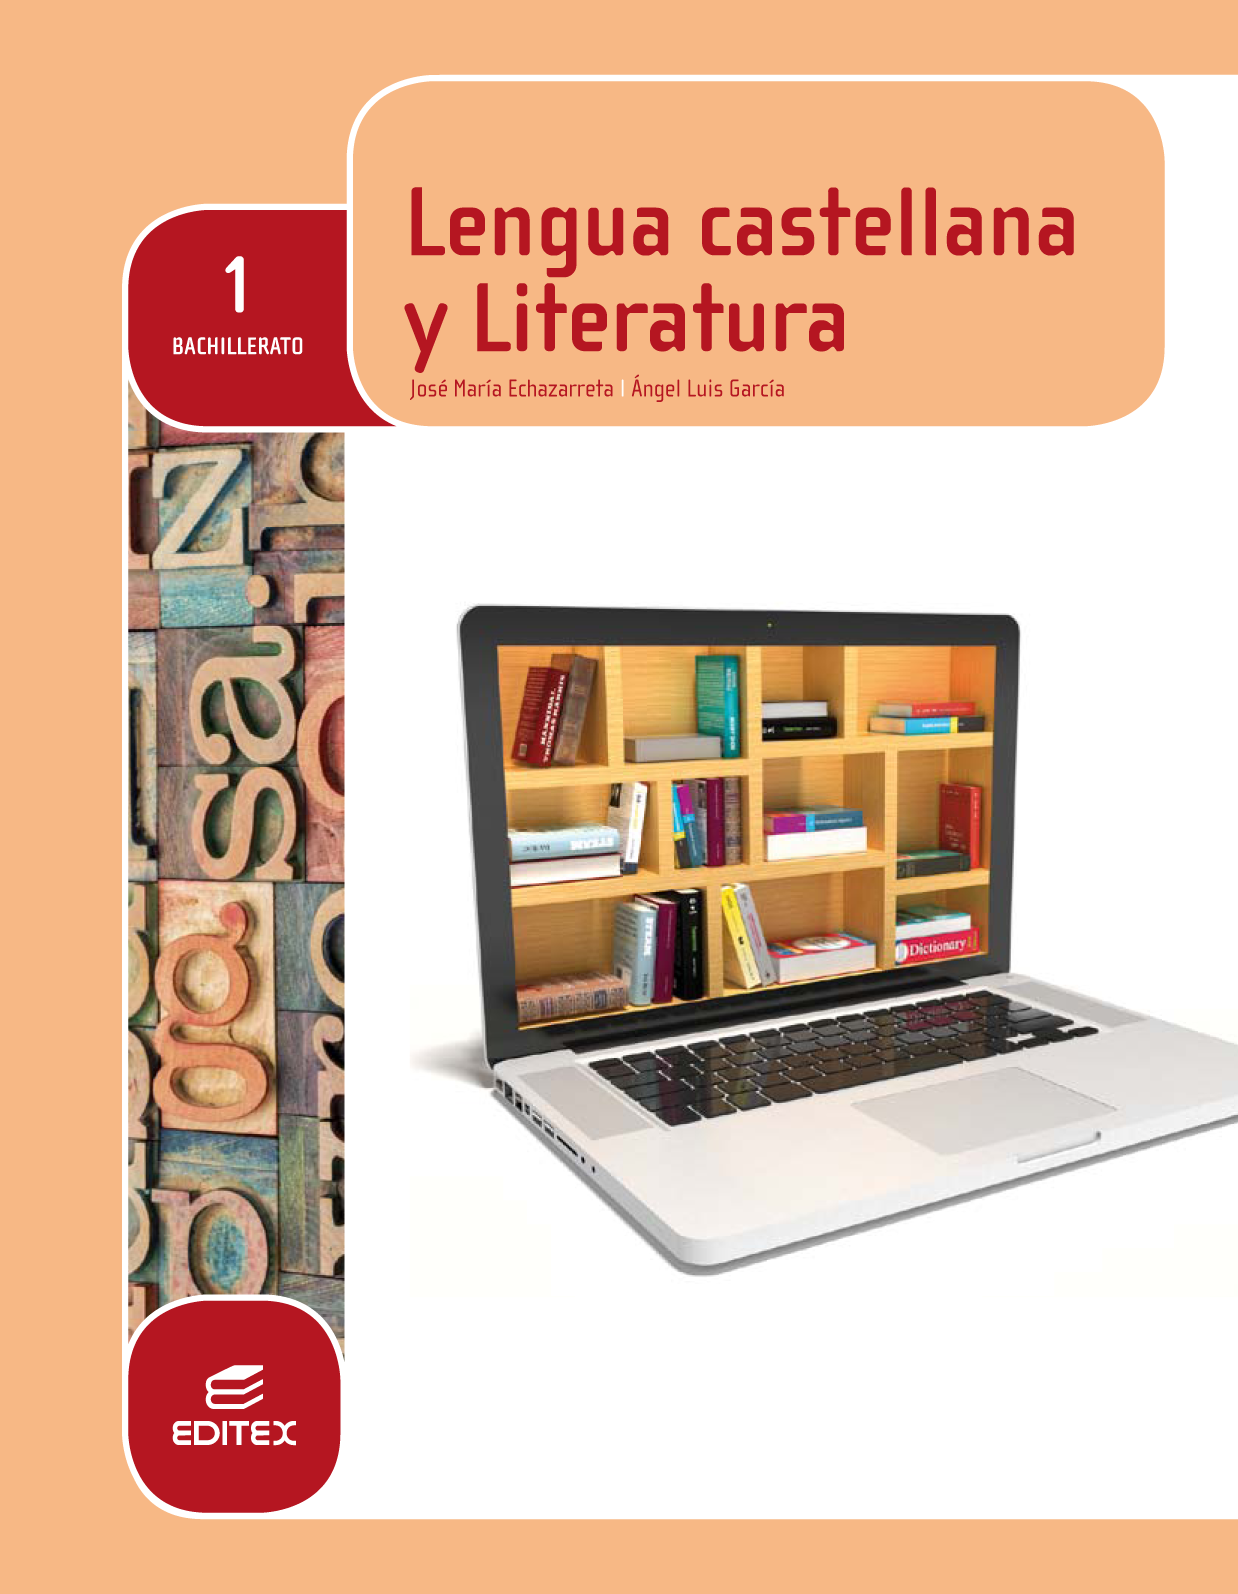 Lengua castellana y Literatura 1º Bachillerato (LOMCE)